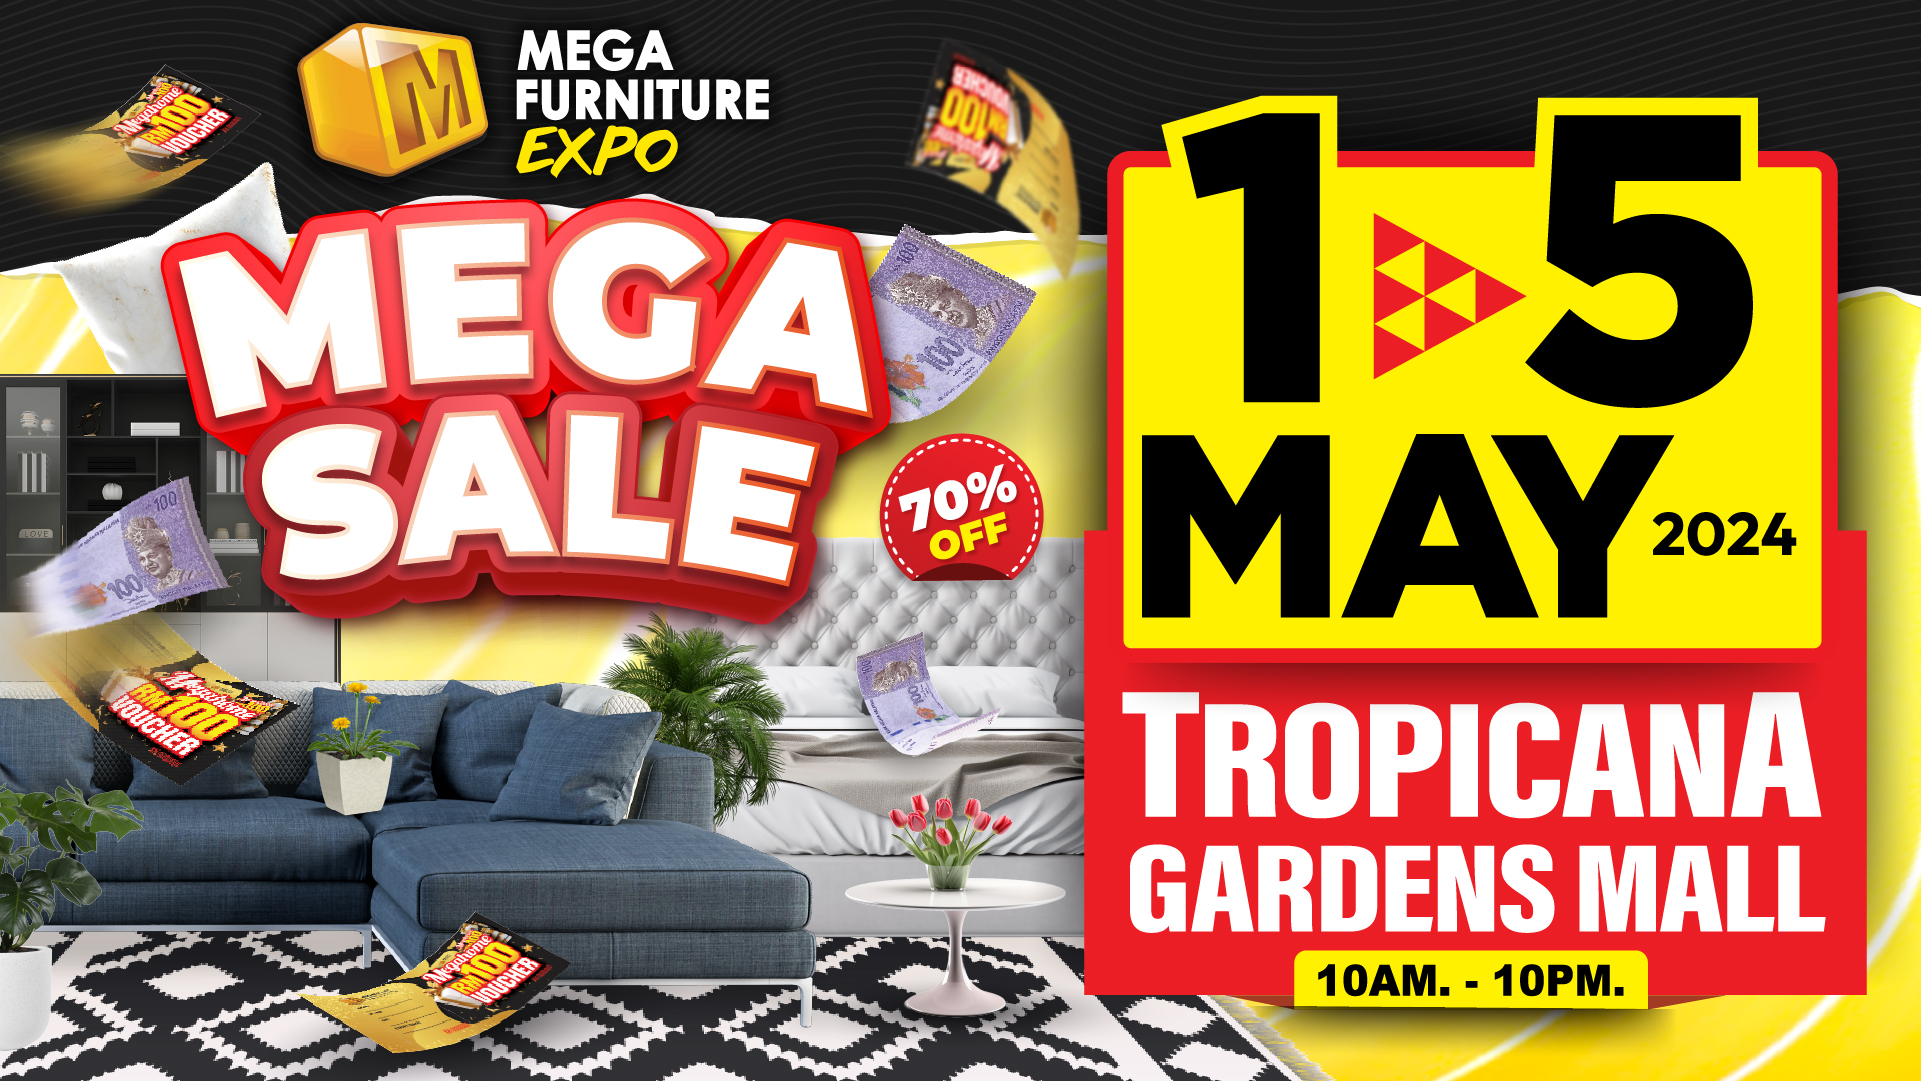 Tropicana Gardens Mall, 1-5 May 2024